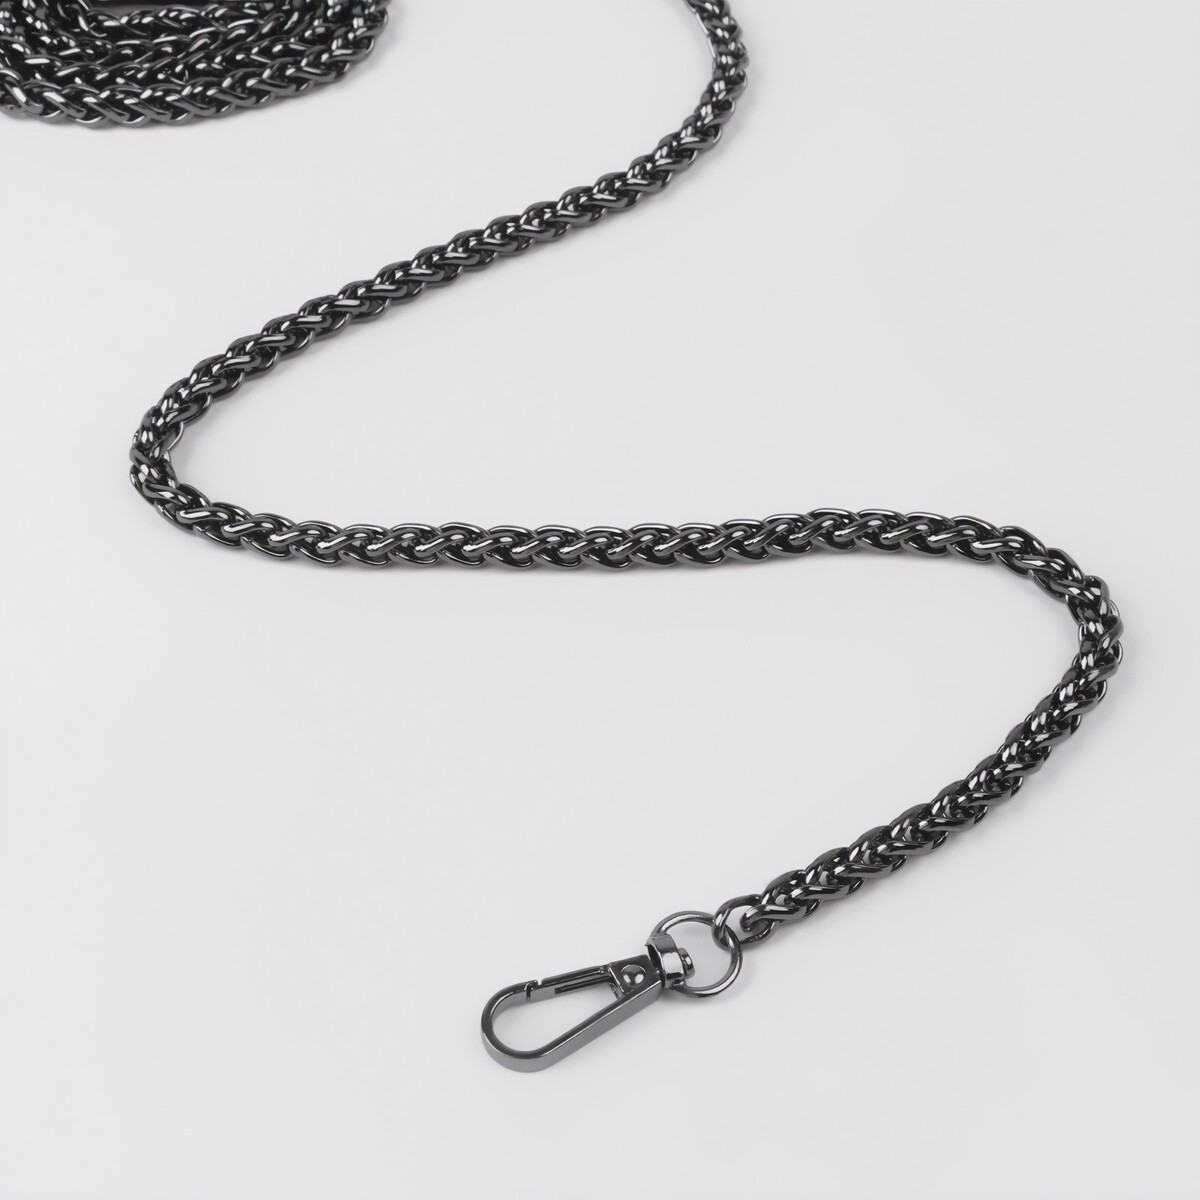 Цепочка для сумки, с карабинами, железная, 7 × 7 мм, 120 см, цвет черный никель